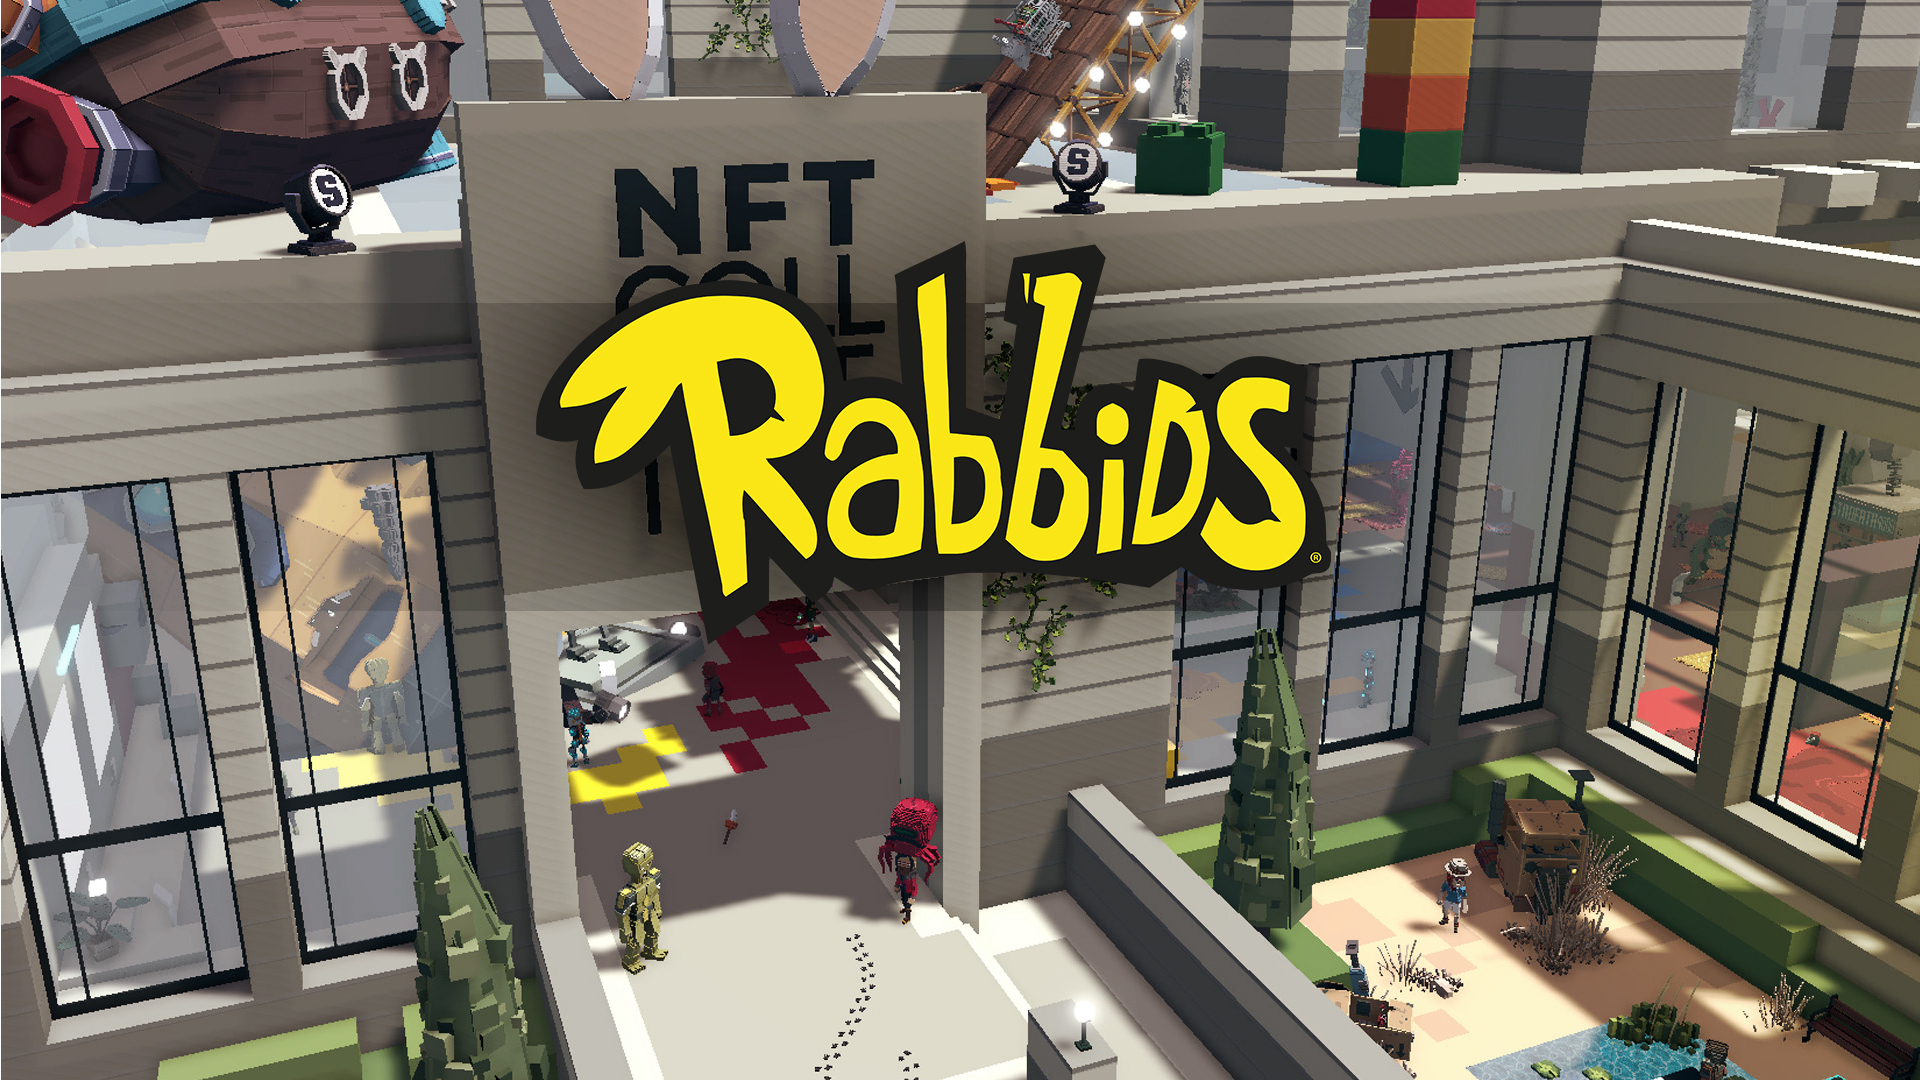 Reddit Werk samen met Ubisoft om gratis Rabbid NFT's aan te bieden